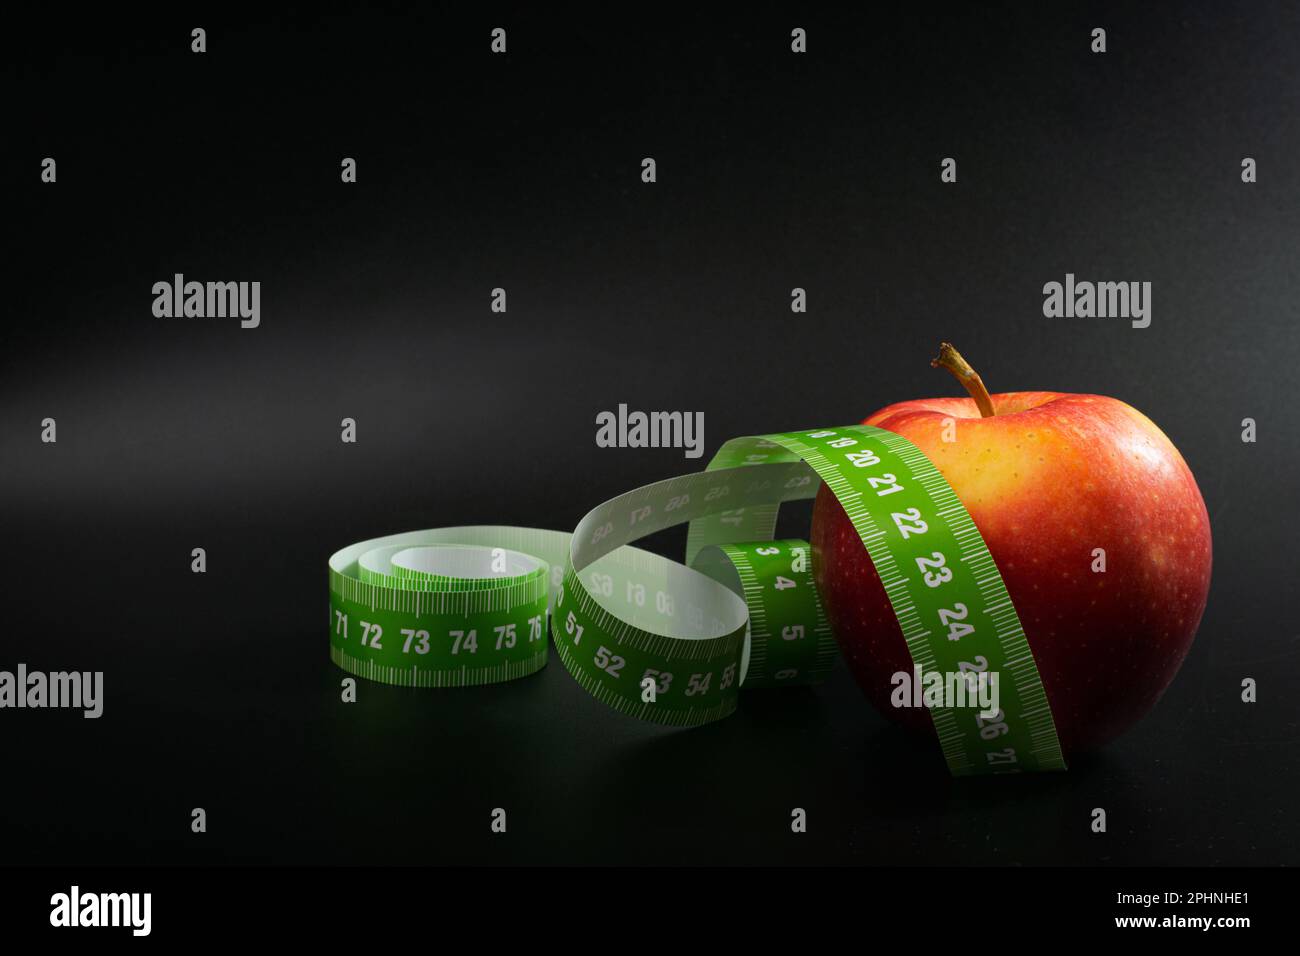 Red Apple et Measuring Tape, Measure Tape, Metric Tape on Black Background, Health Diet Food, concept de perte de poids Banque D'Images